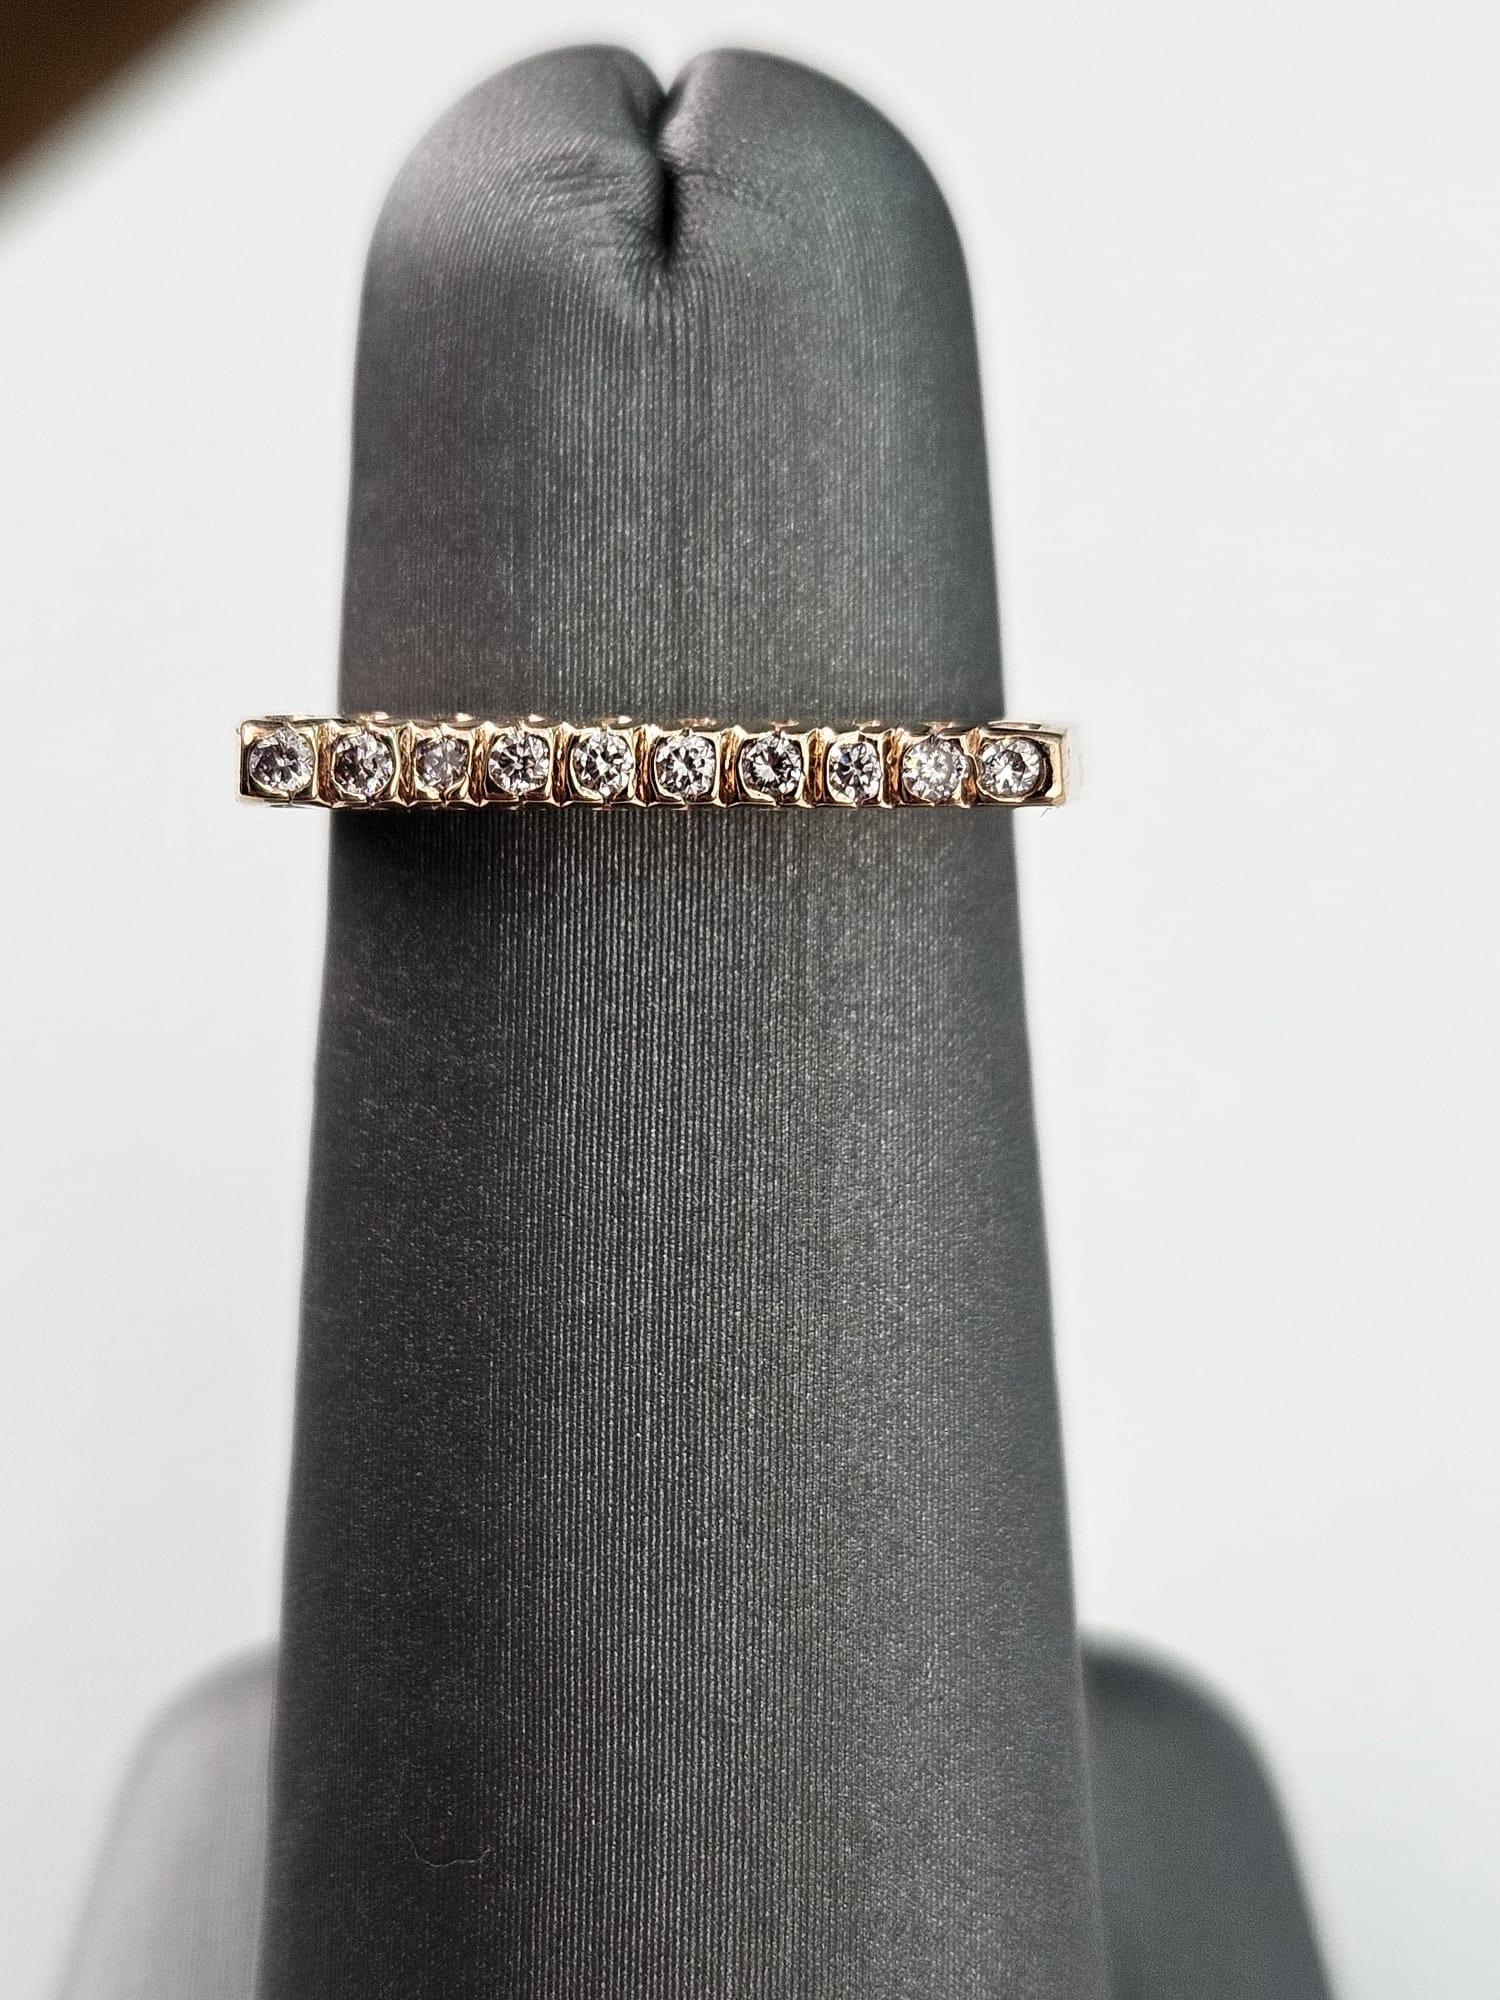 Ein faszinierender und eleganter Ring mit 0,13 Karat rosafarbenen Diamanten, der sorgfältig aus luxuriösem Roségold gefertigt wurde und Romantik und Raffinesse ausstrahlt. Dieser exquisite Ring zeichnet sich durch eine gerade Linie aus schimmernden